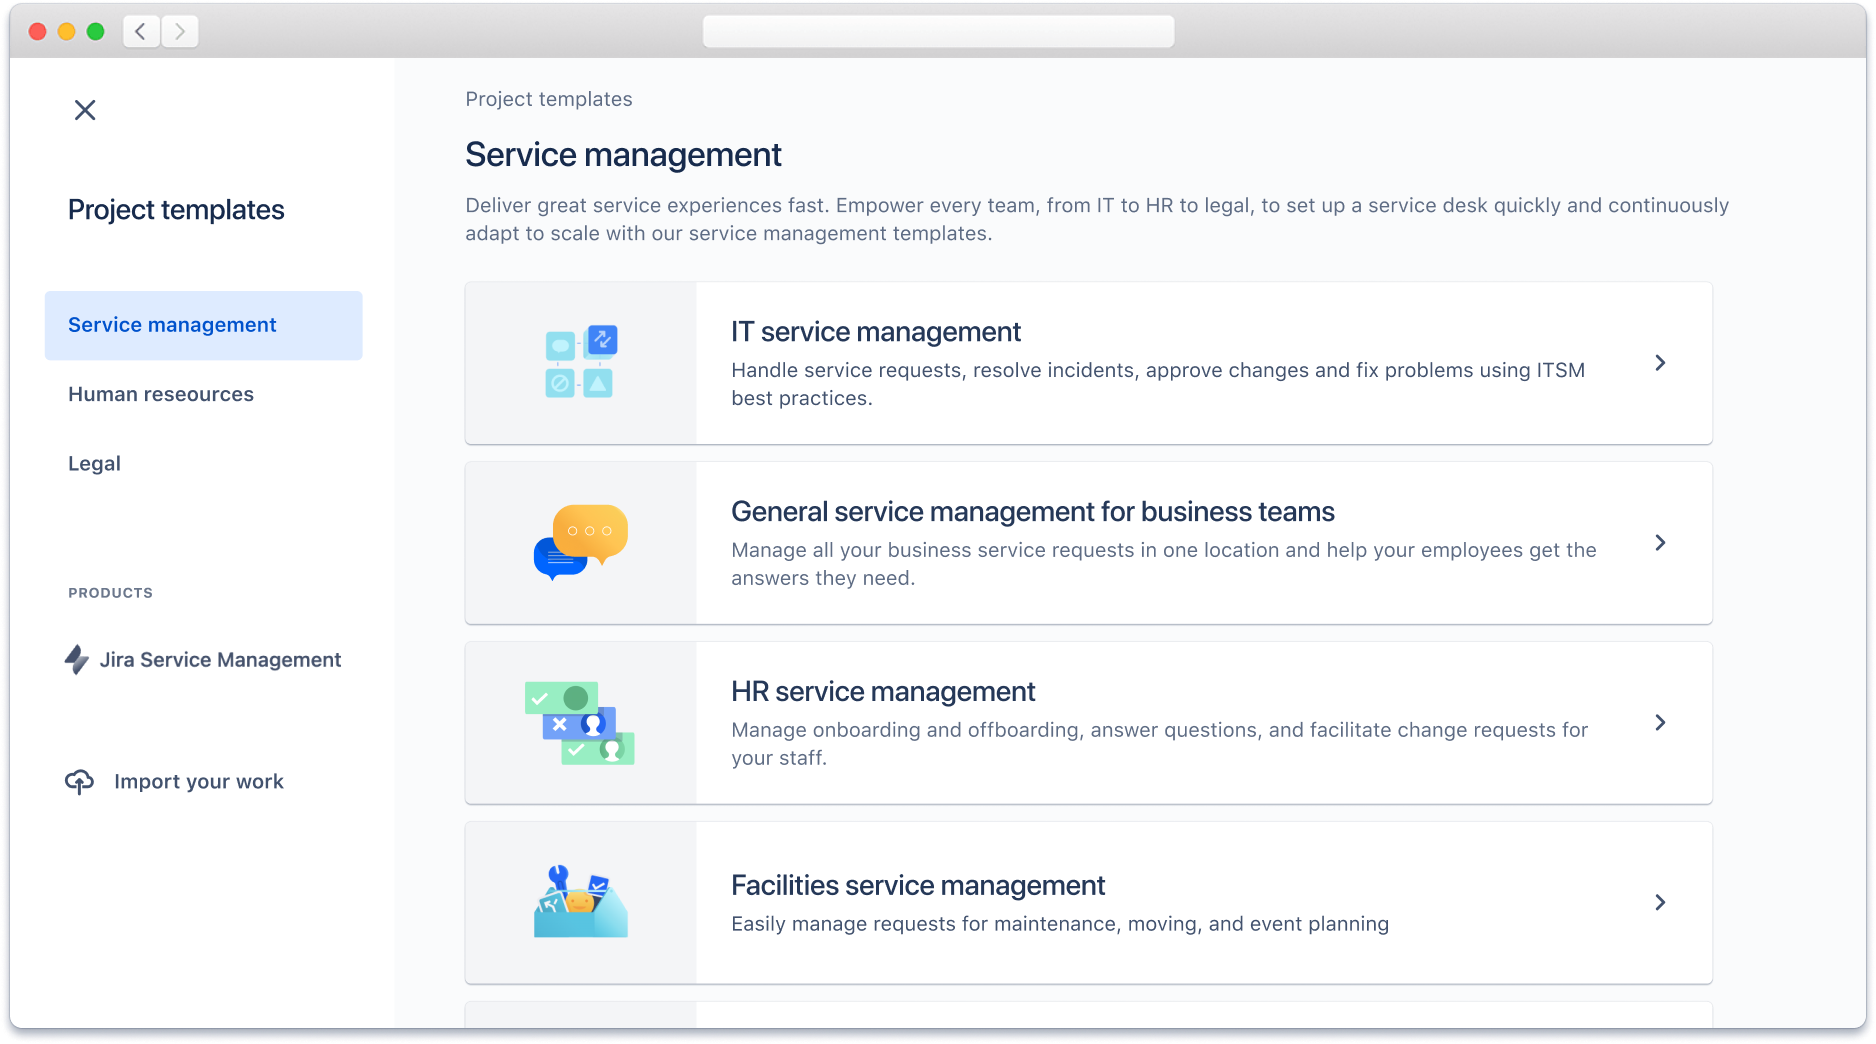 Projectsjablonen voor servicemanagement die beschikbaar zijn in Jira Service Management